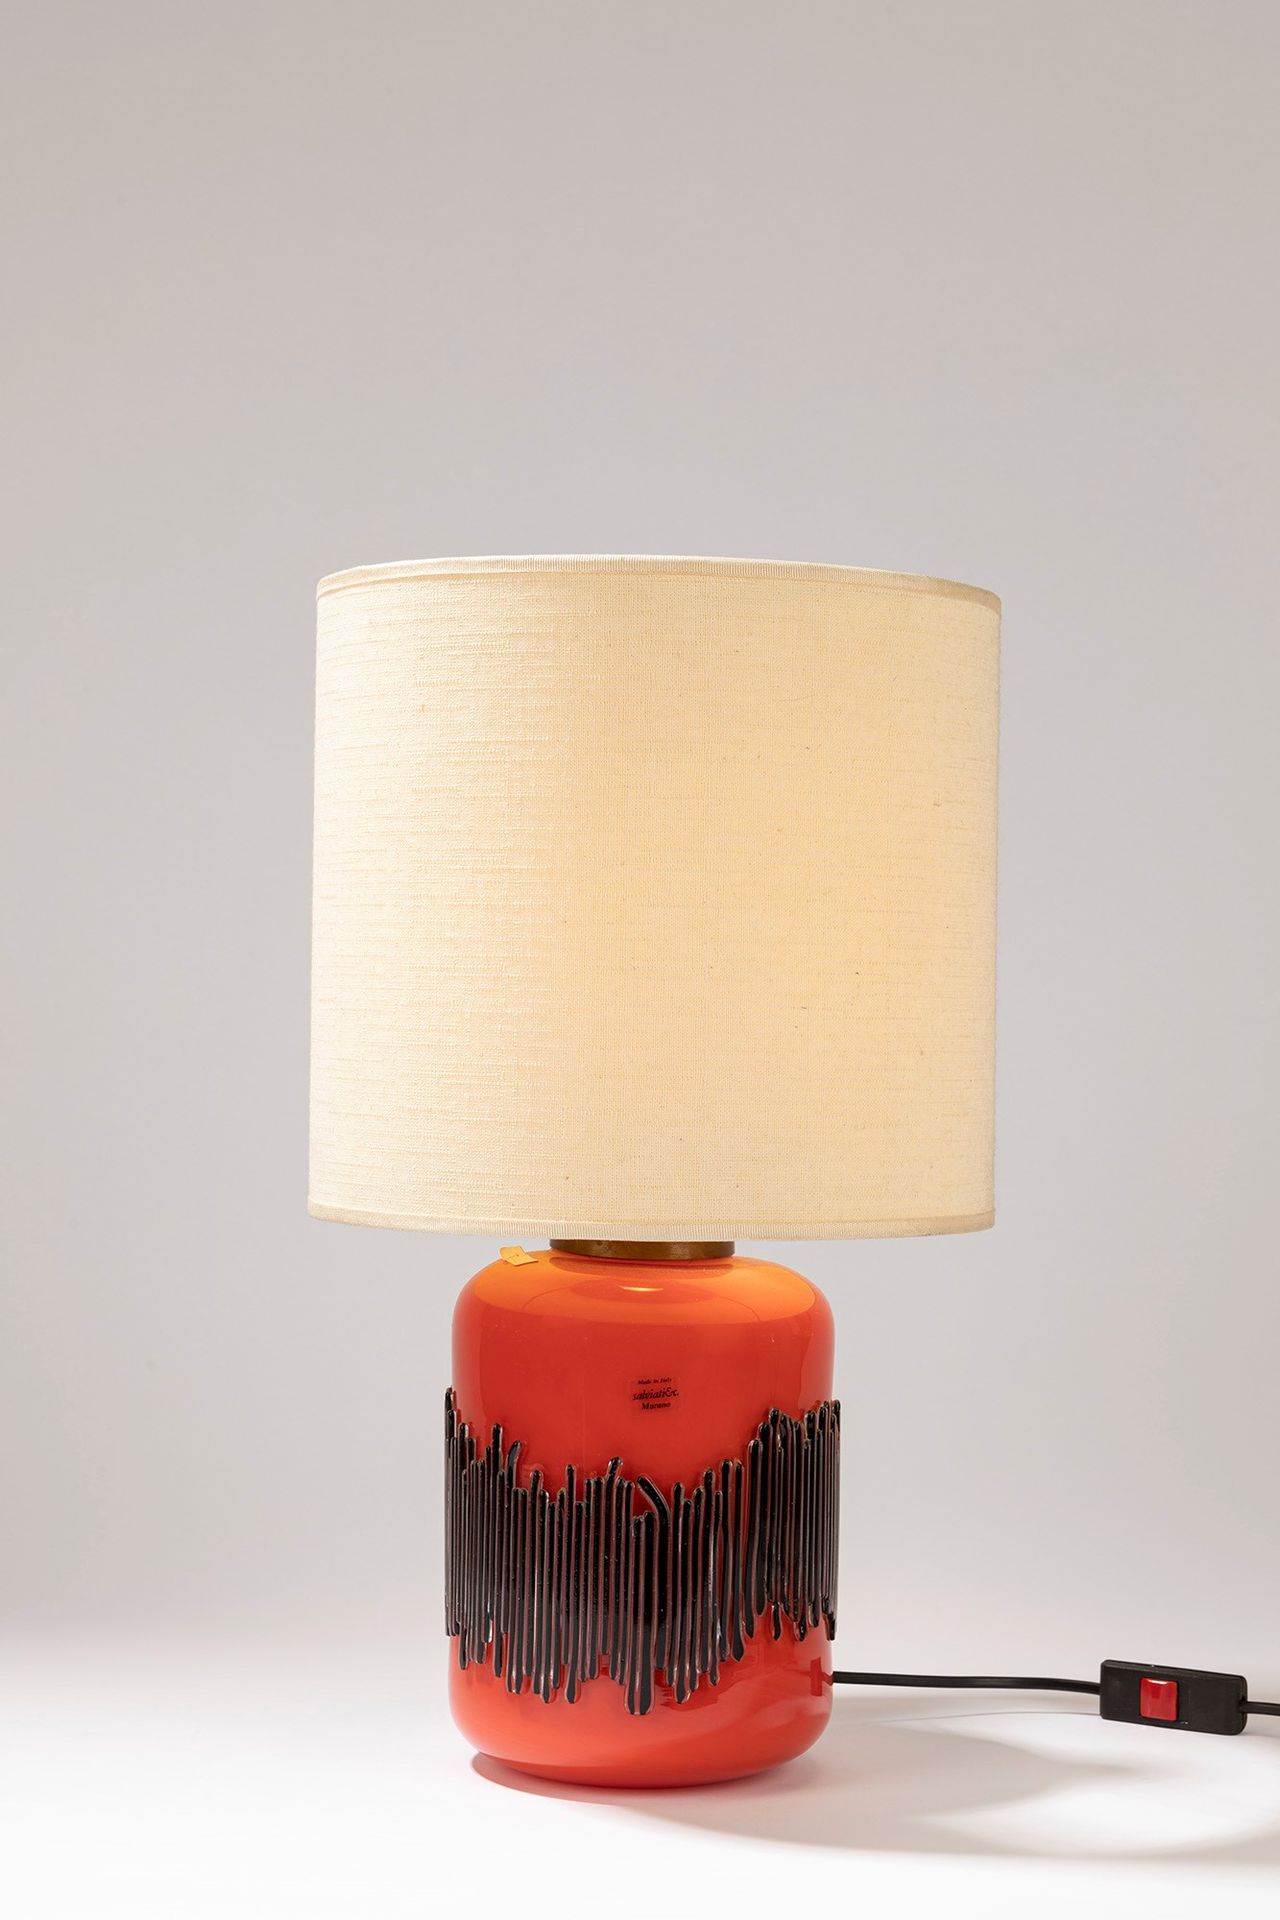 SALVIATI, MURANO Table lamp, 70's period

cm 48 x 29
orange blown glass.